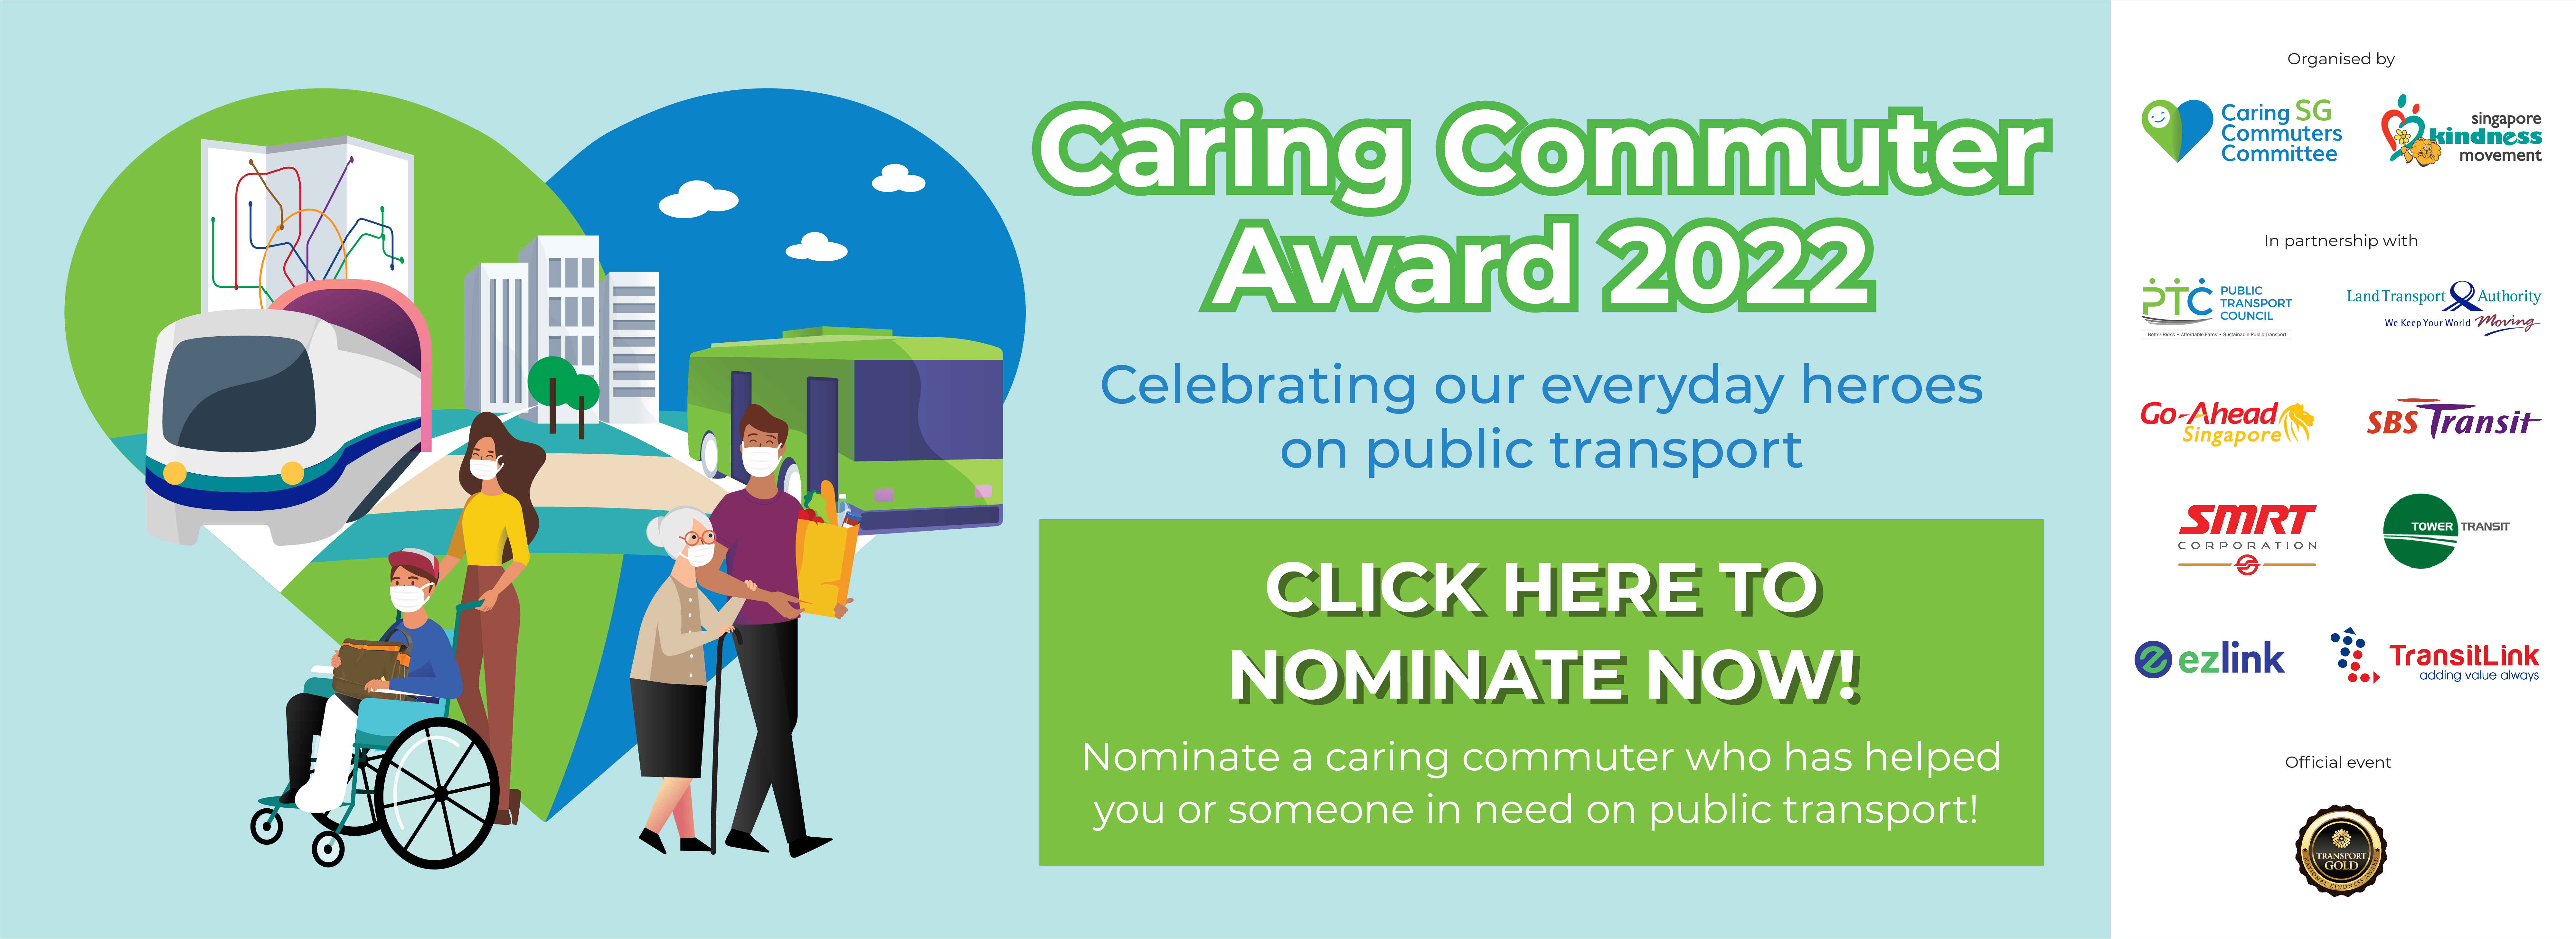 Caring Commuter Award